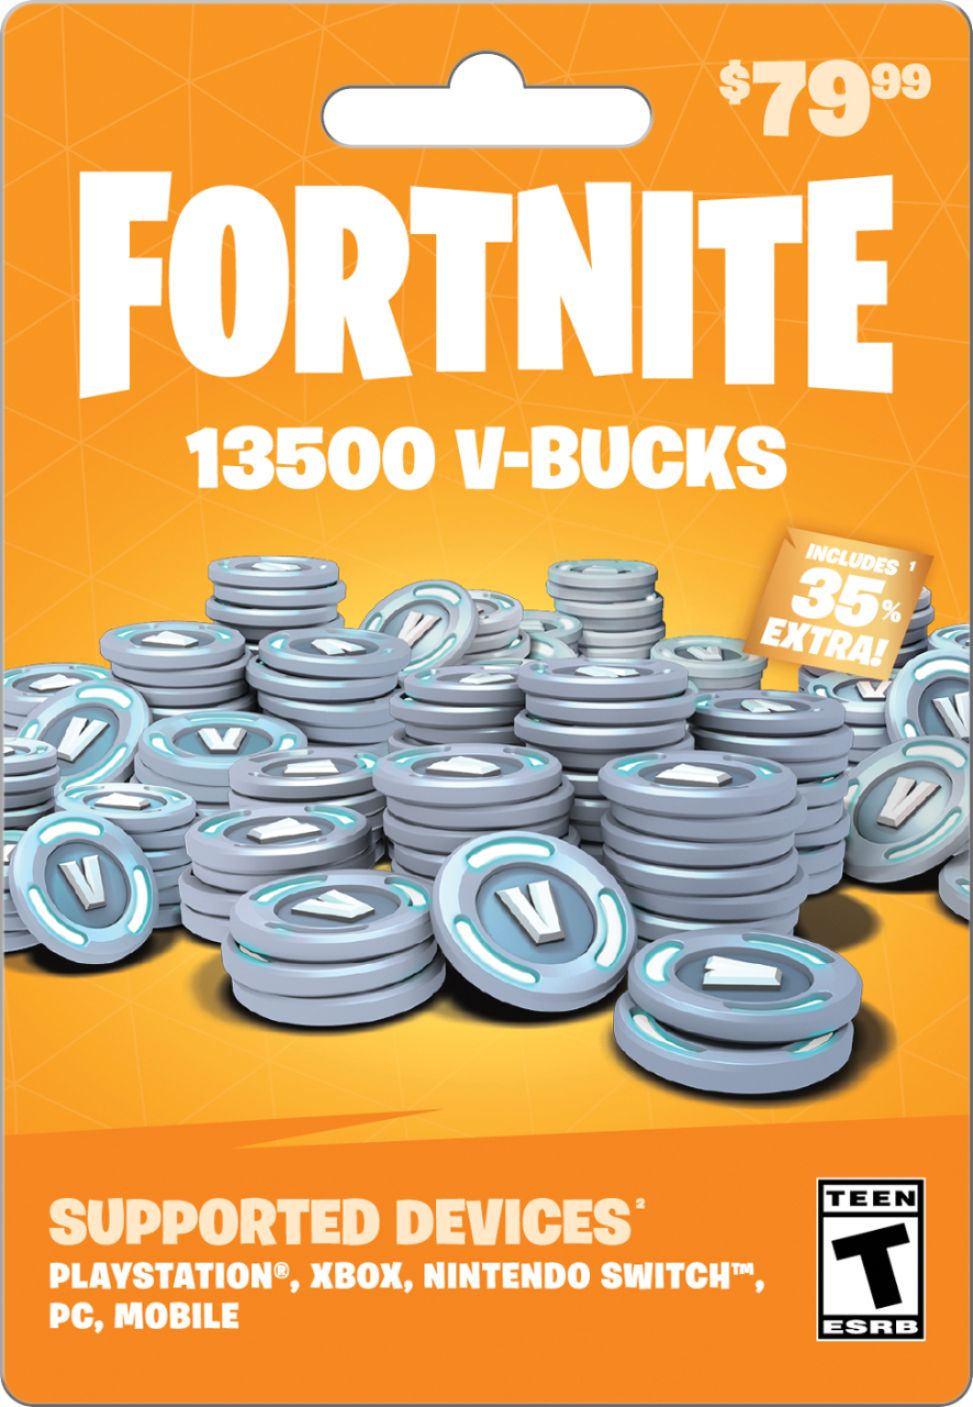 Fortnite V-Bucks 79.99 Card